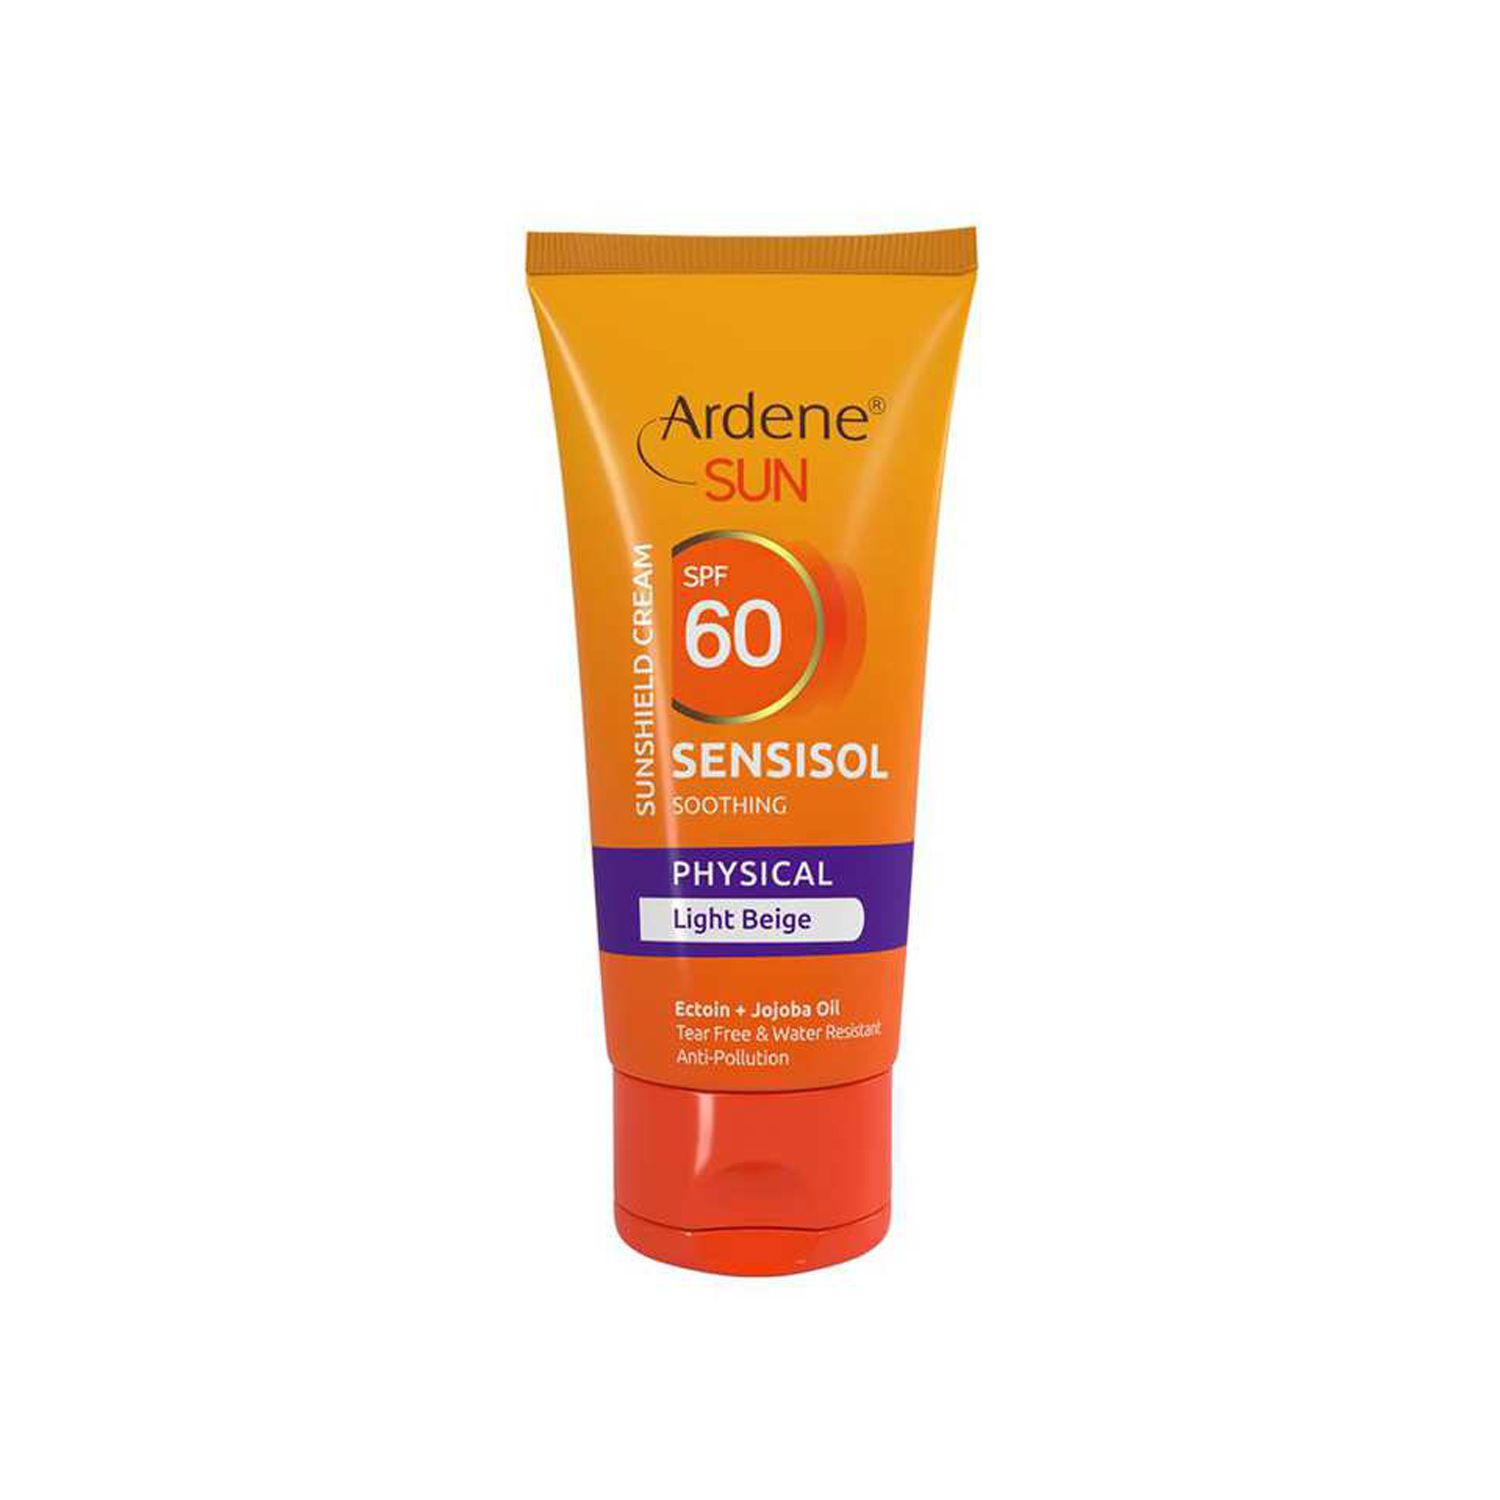 کرم ضد آفتاب آردن مدل Sensisol SPF 60 مناسب پوست حساس حجم 50 میلی لیتر - بژ روشن